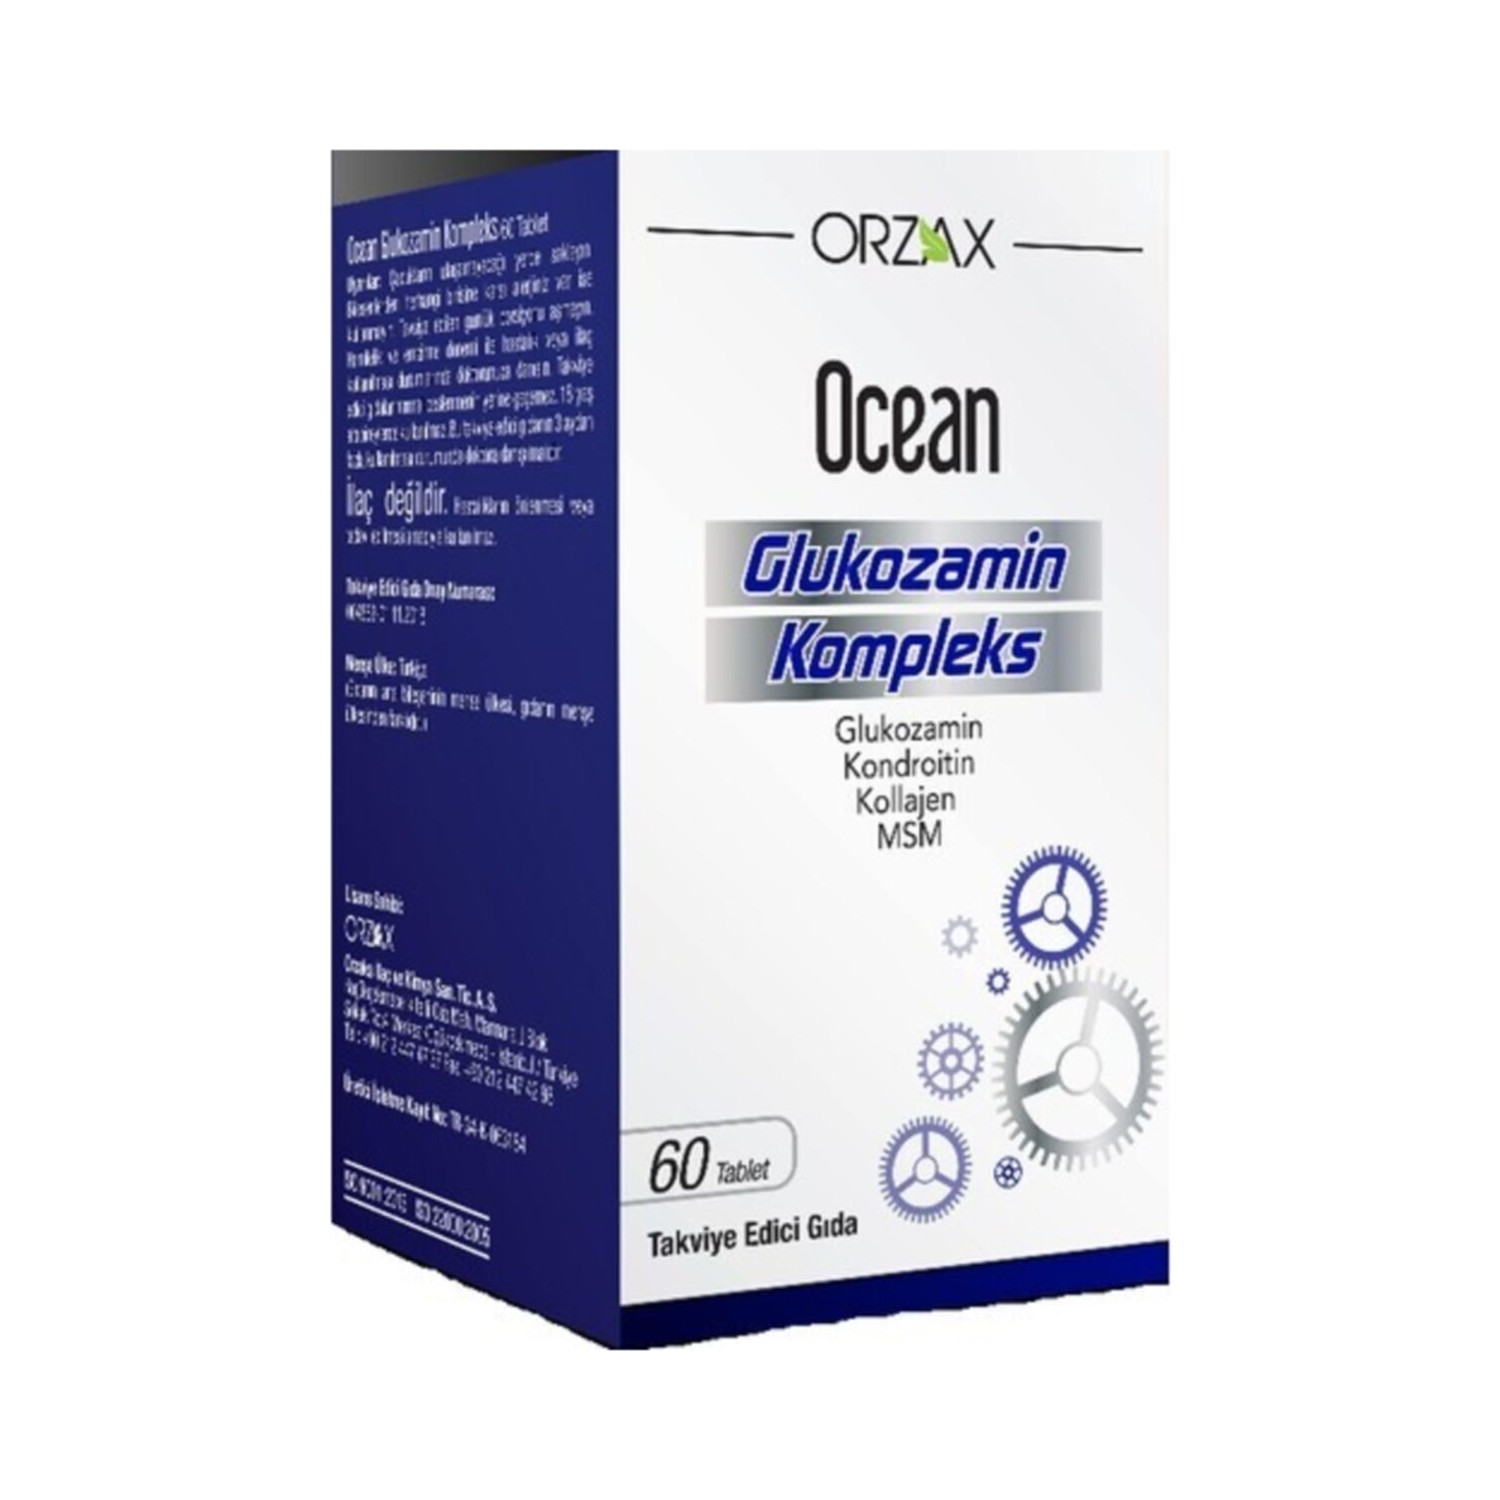 Комплекс глюкозамина Ocean, 60 таблетокs комплекс глюкозамина ocean 2 упаковки по 60 таблеток